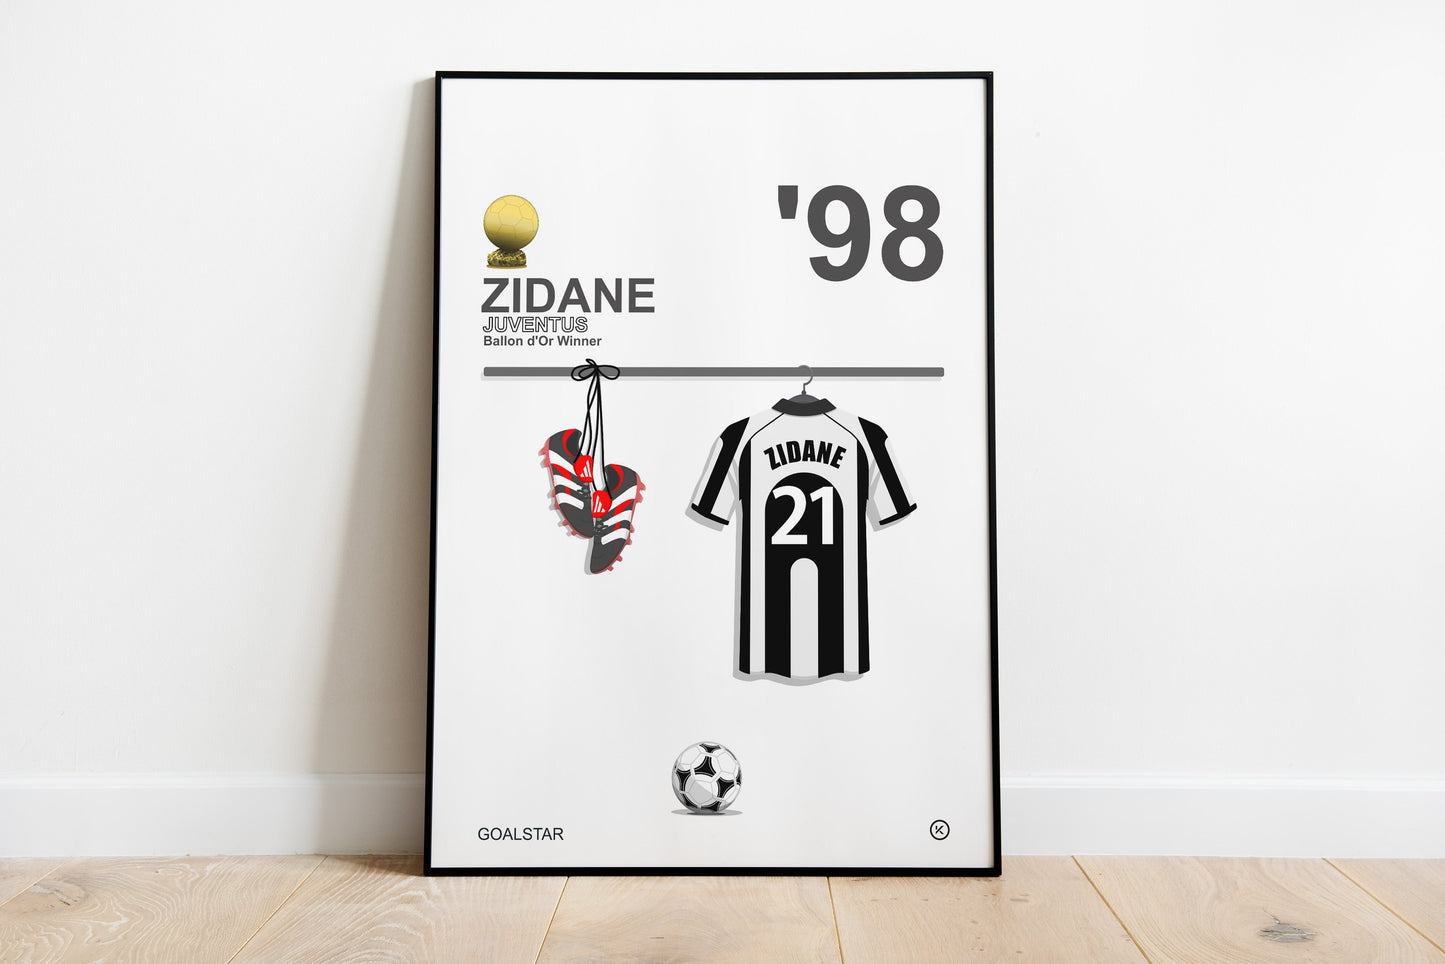 Zinedine Zidane - Ballon d'Or Winner 1998